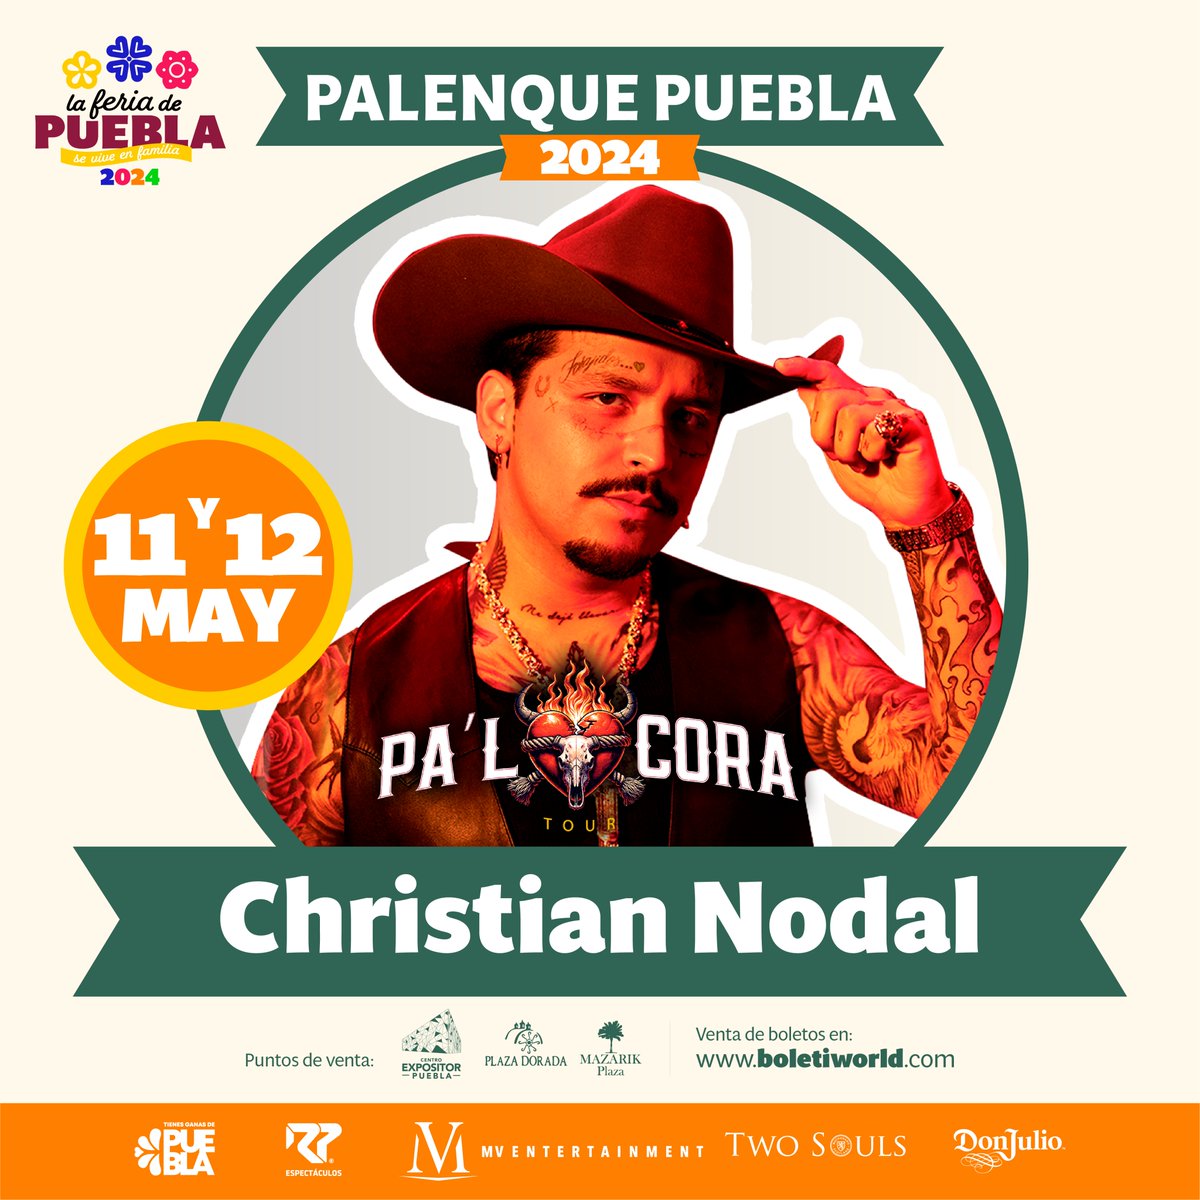 Christian Nodal será el encargado de cerrar las noches de conciertos en el Palenque de la #FeriaDePuebla 2024. ¡No puedes perdértelo este 11 y 12 de mayo! 🎶🎤 #SeViveEnFamilia